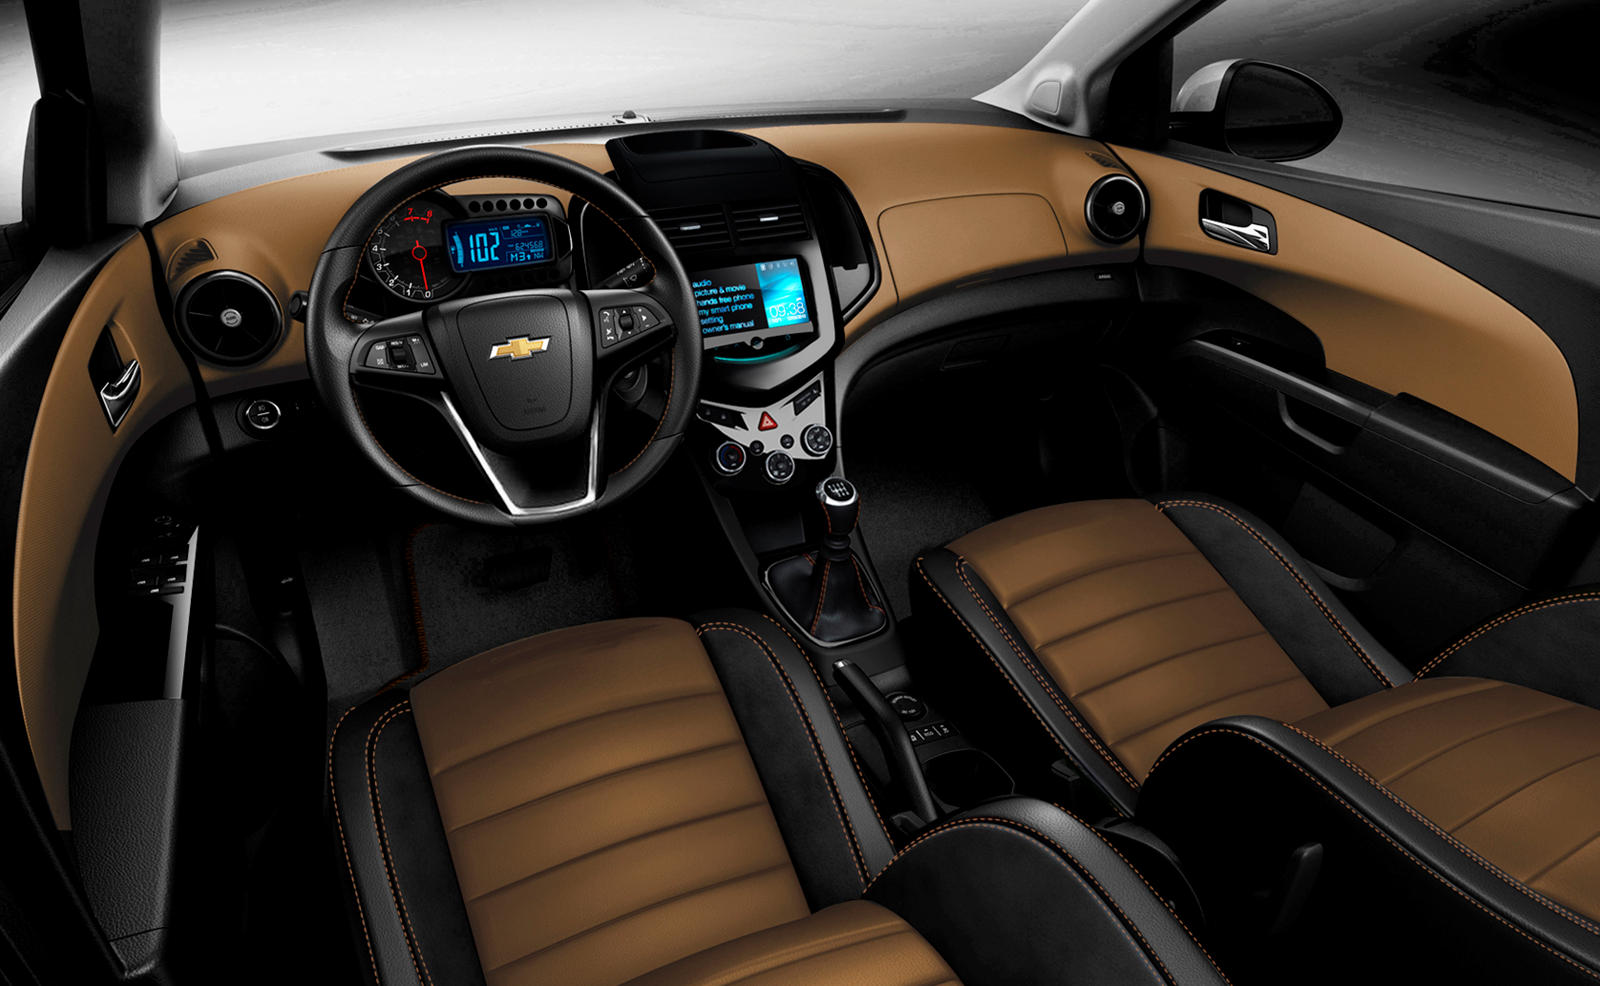 2014 Chevrolet Sonic Sedan: Review, Trims, Specs, Price, New